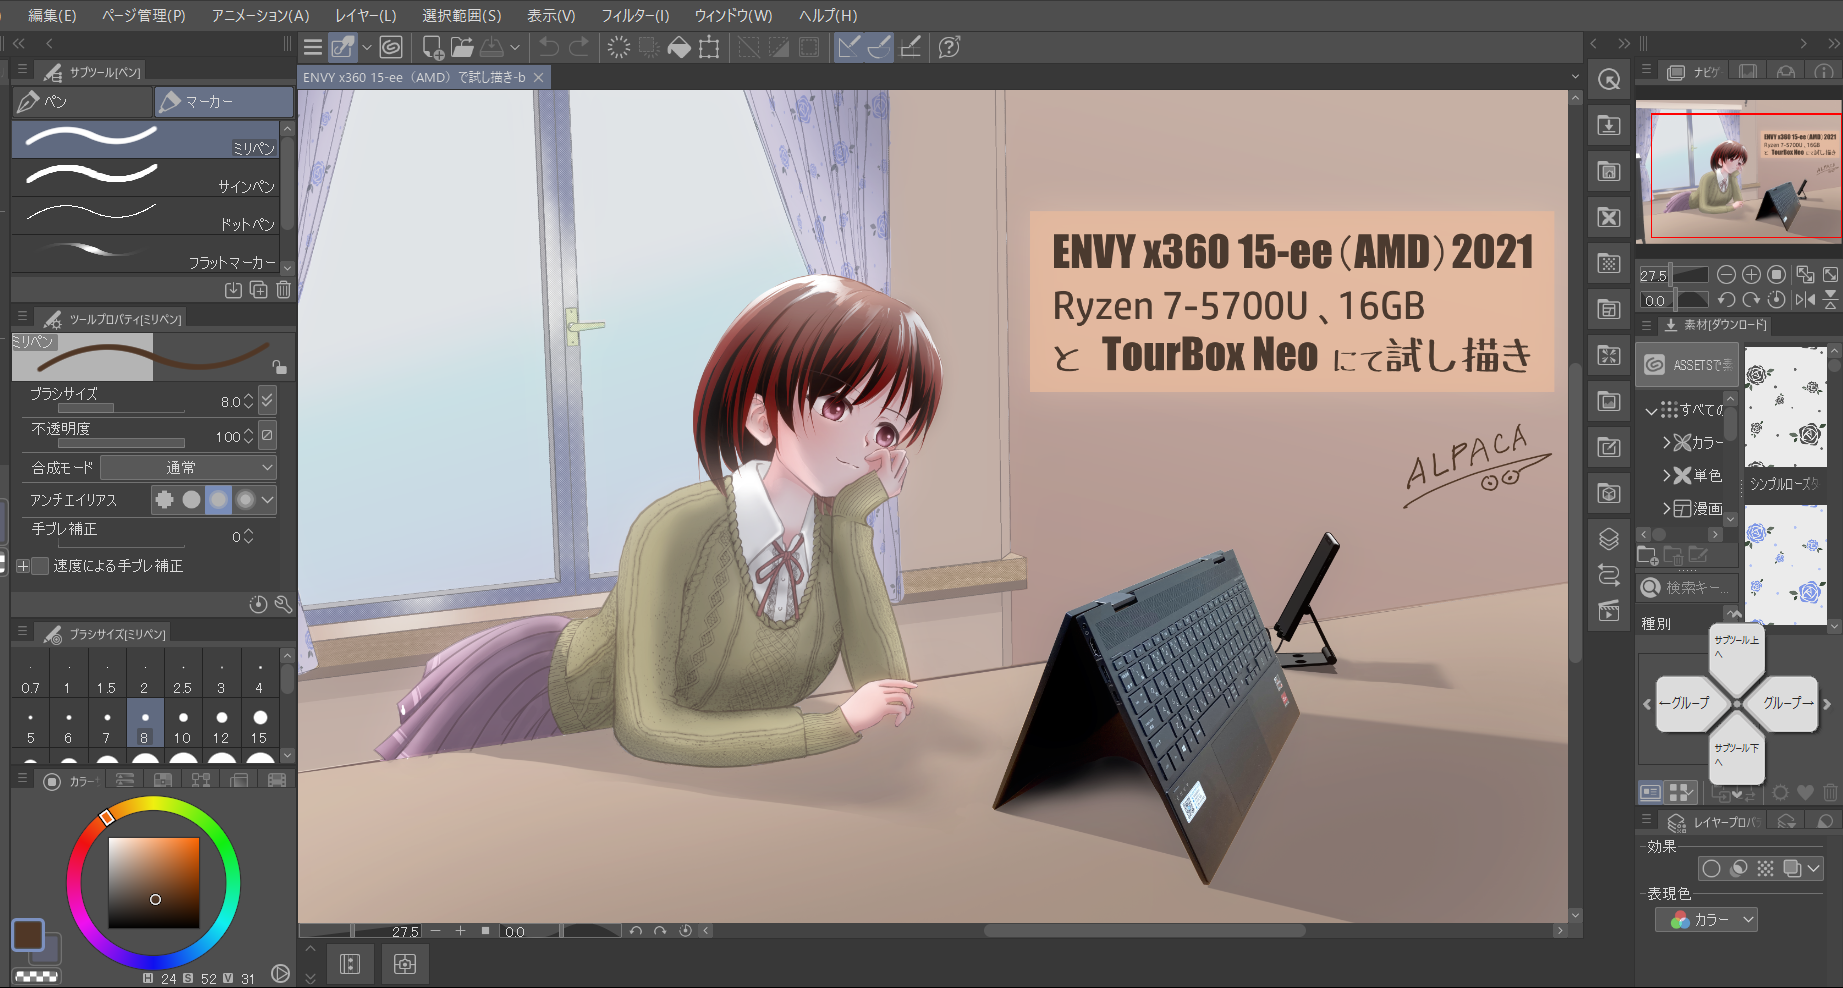 「ENVY x360 15-ee（AMD）」で試しに一枚、描いてみた（イラスト描き心地テスト）